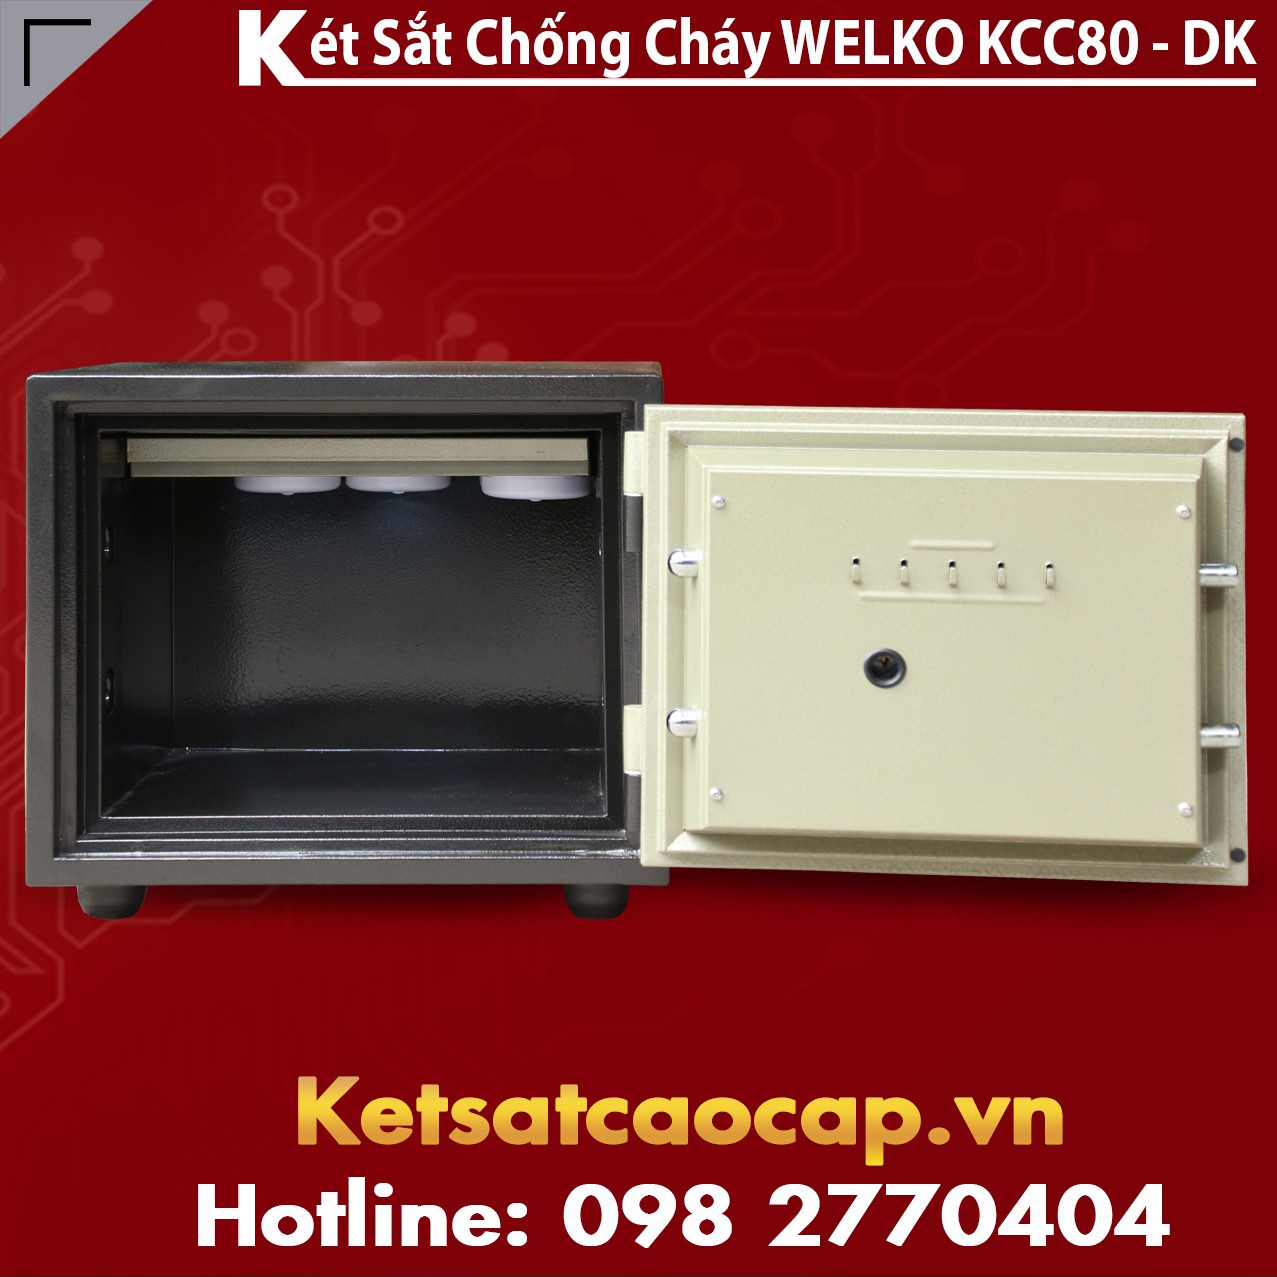 Ket Sat Chong Dap KCC80 - DK